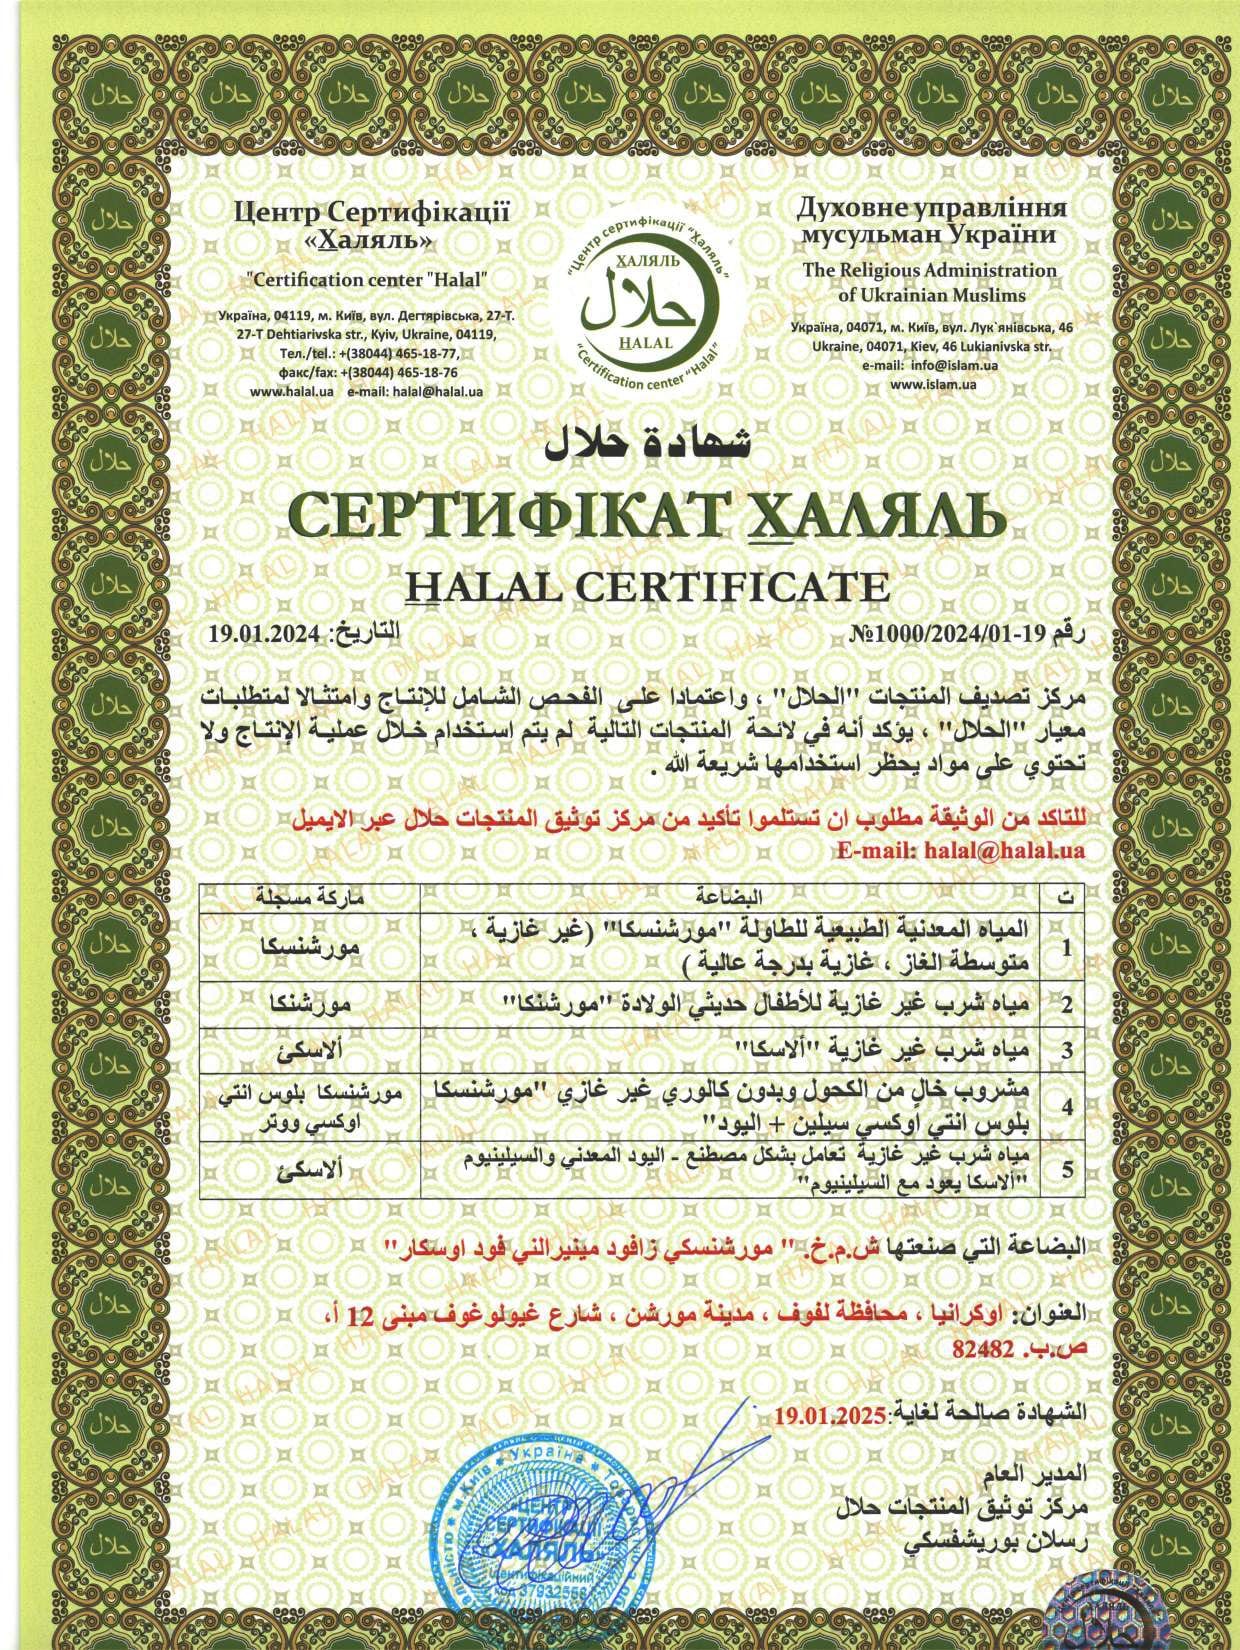 Serteficate_halal_arab.jpg